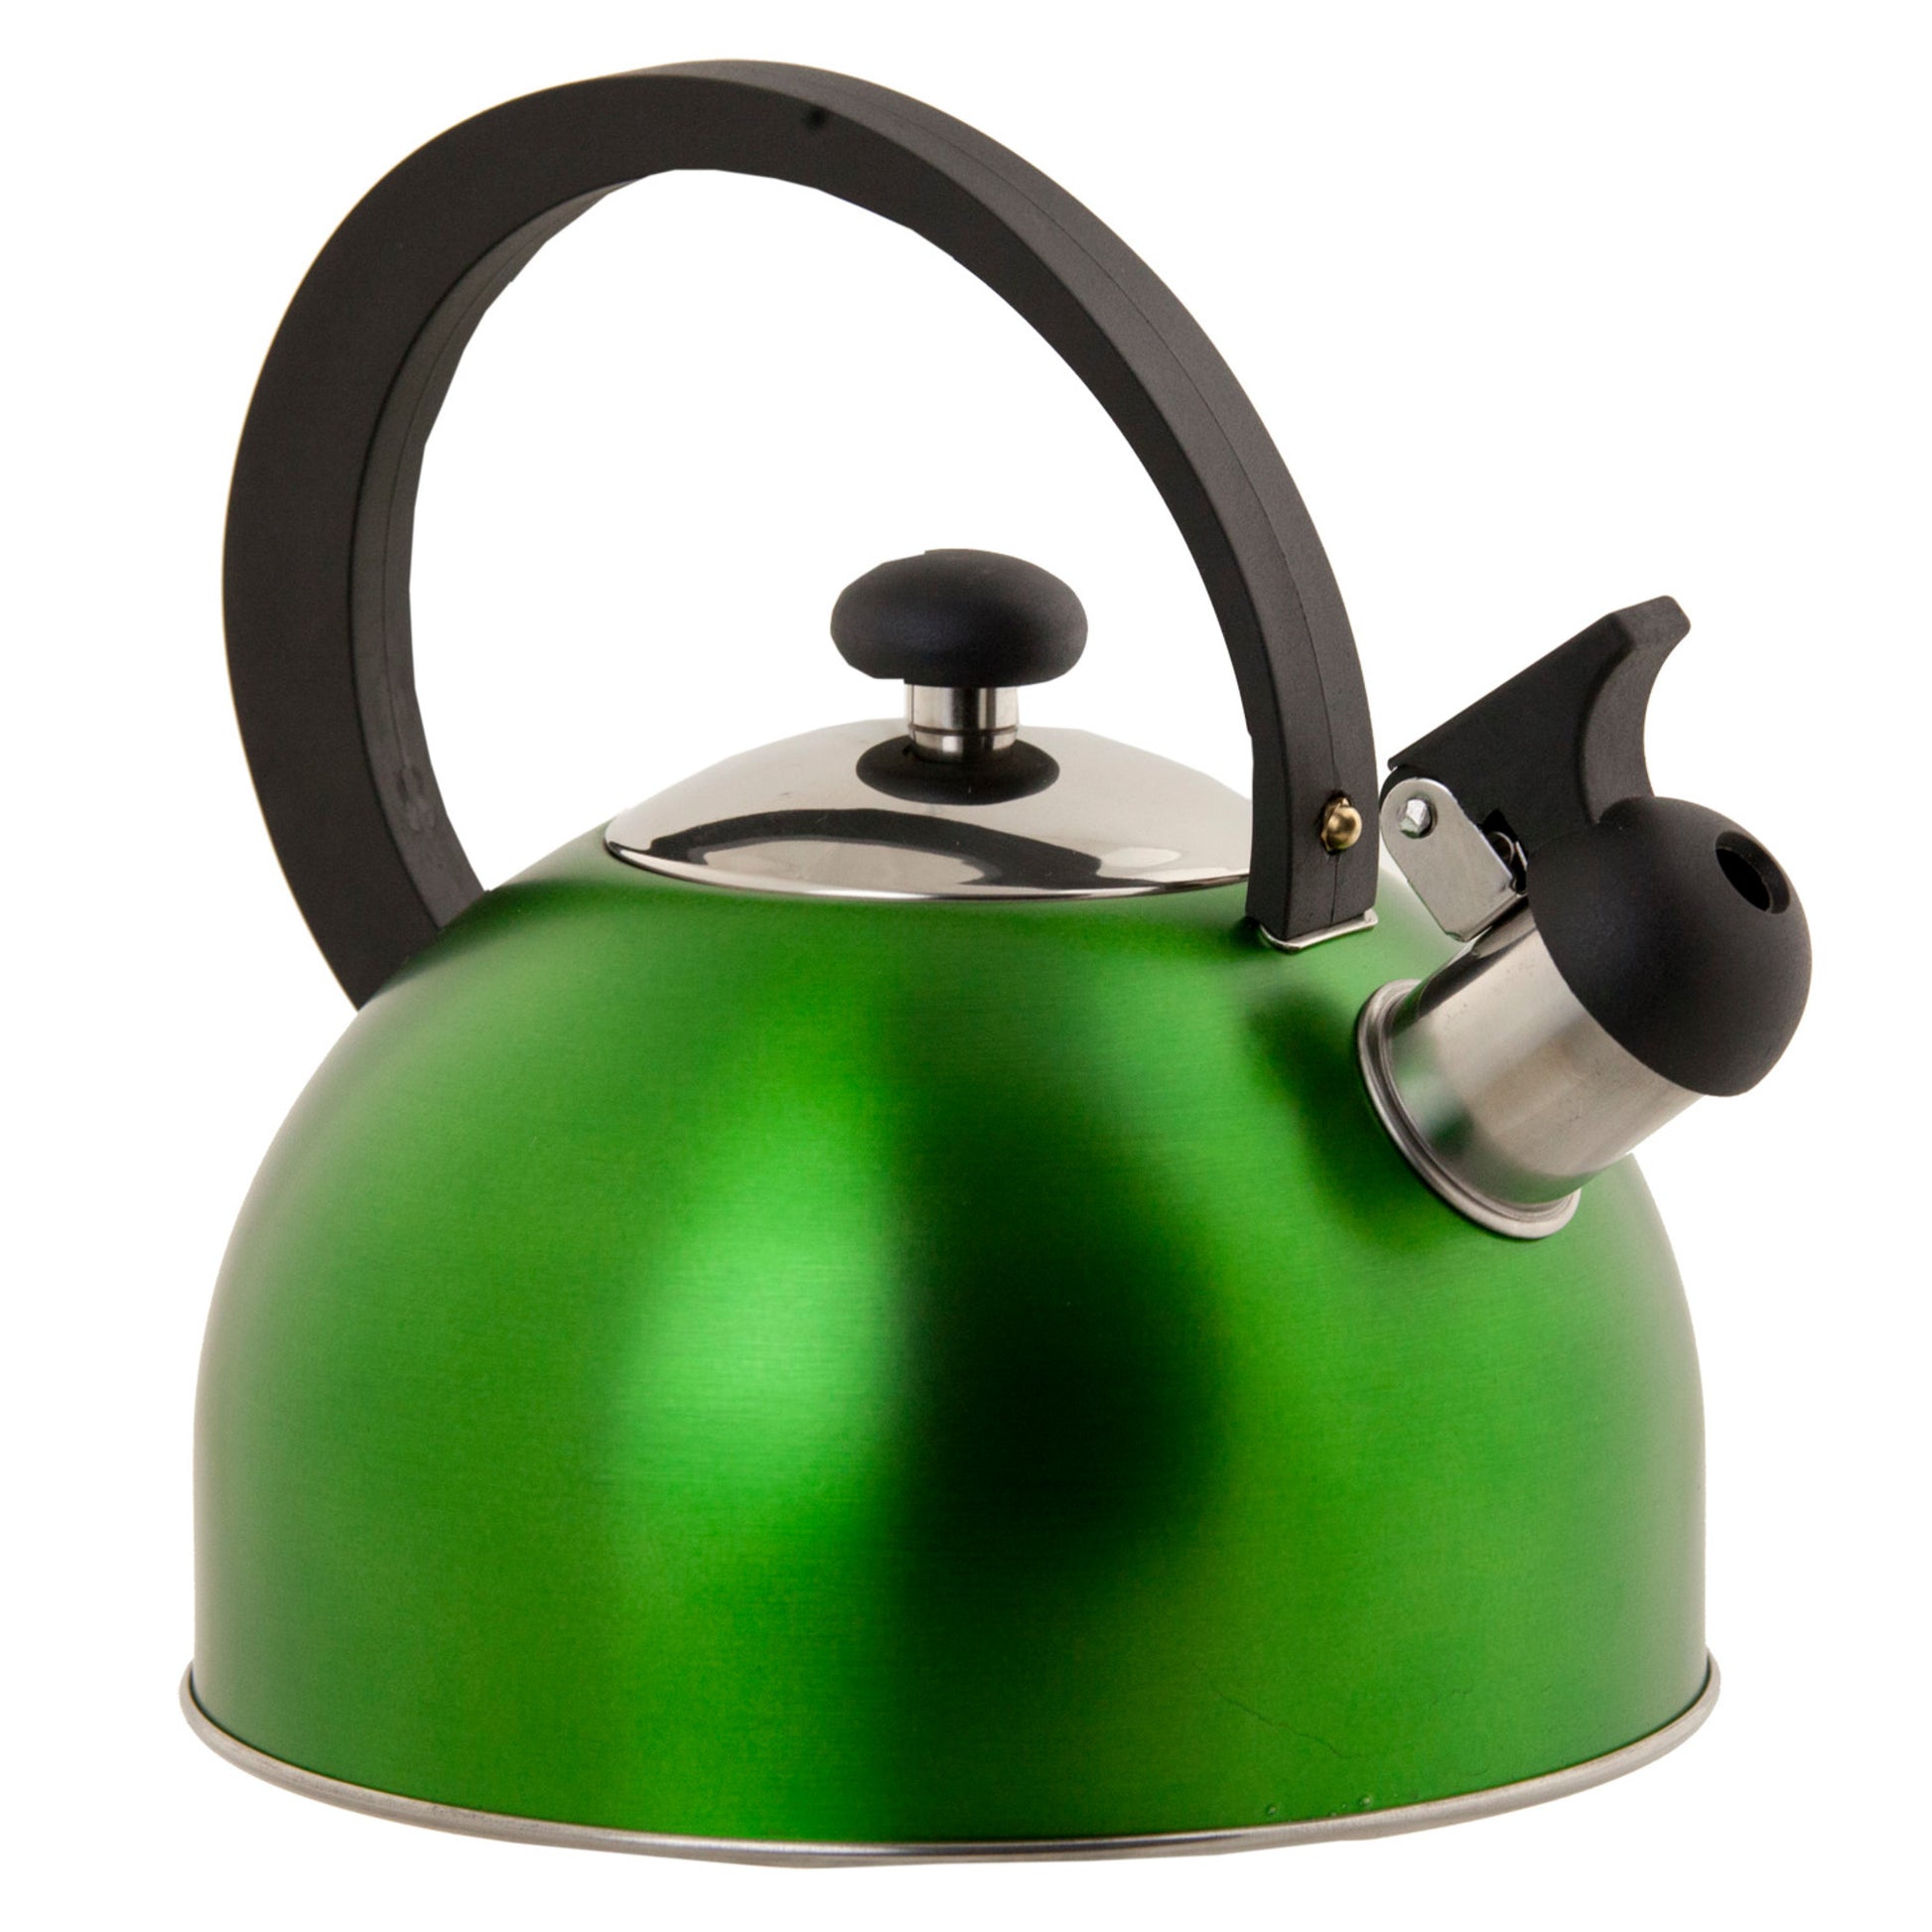 Home Basics 85 oz. Stainless Steel Whistling Tea Kettle - Green